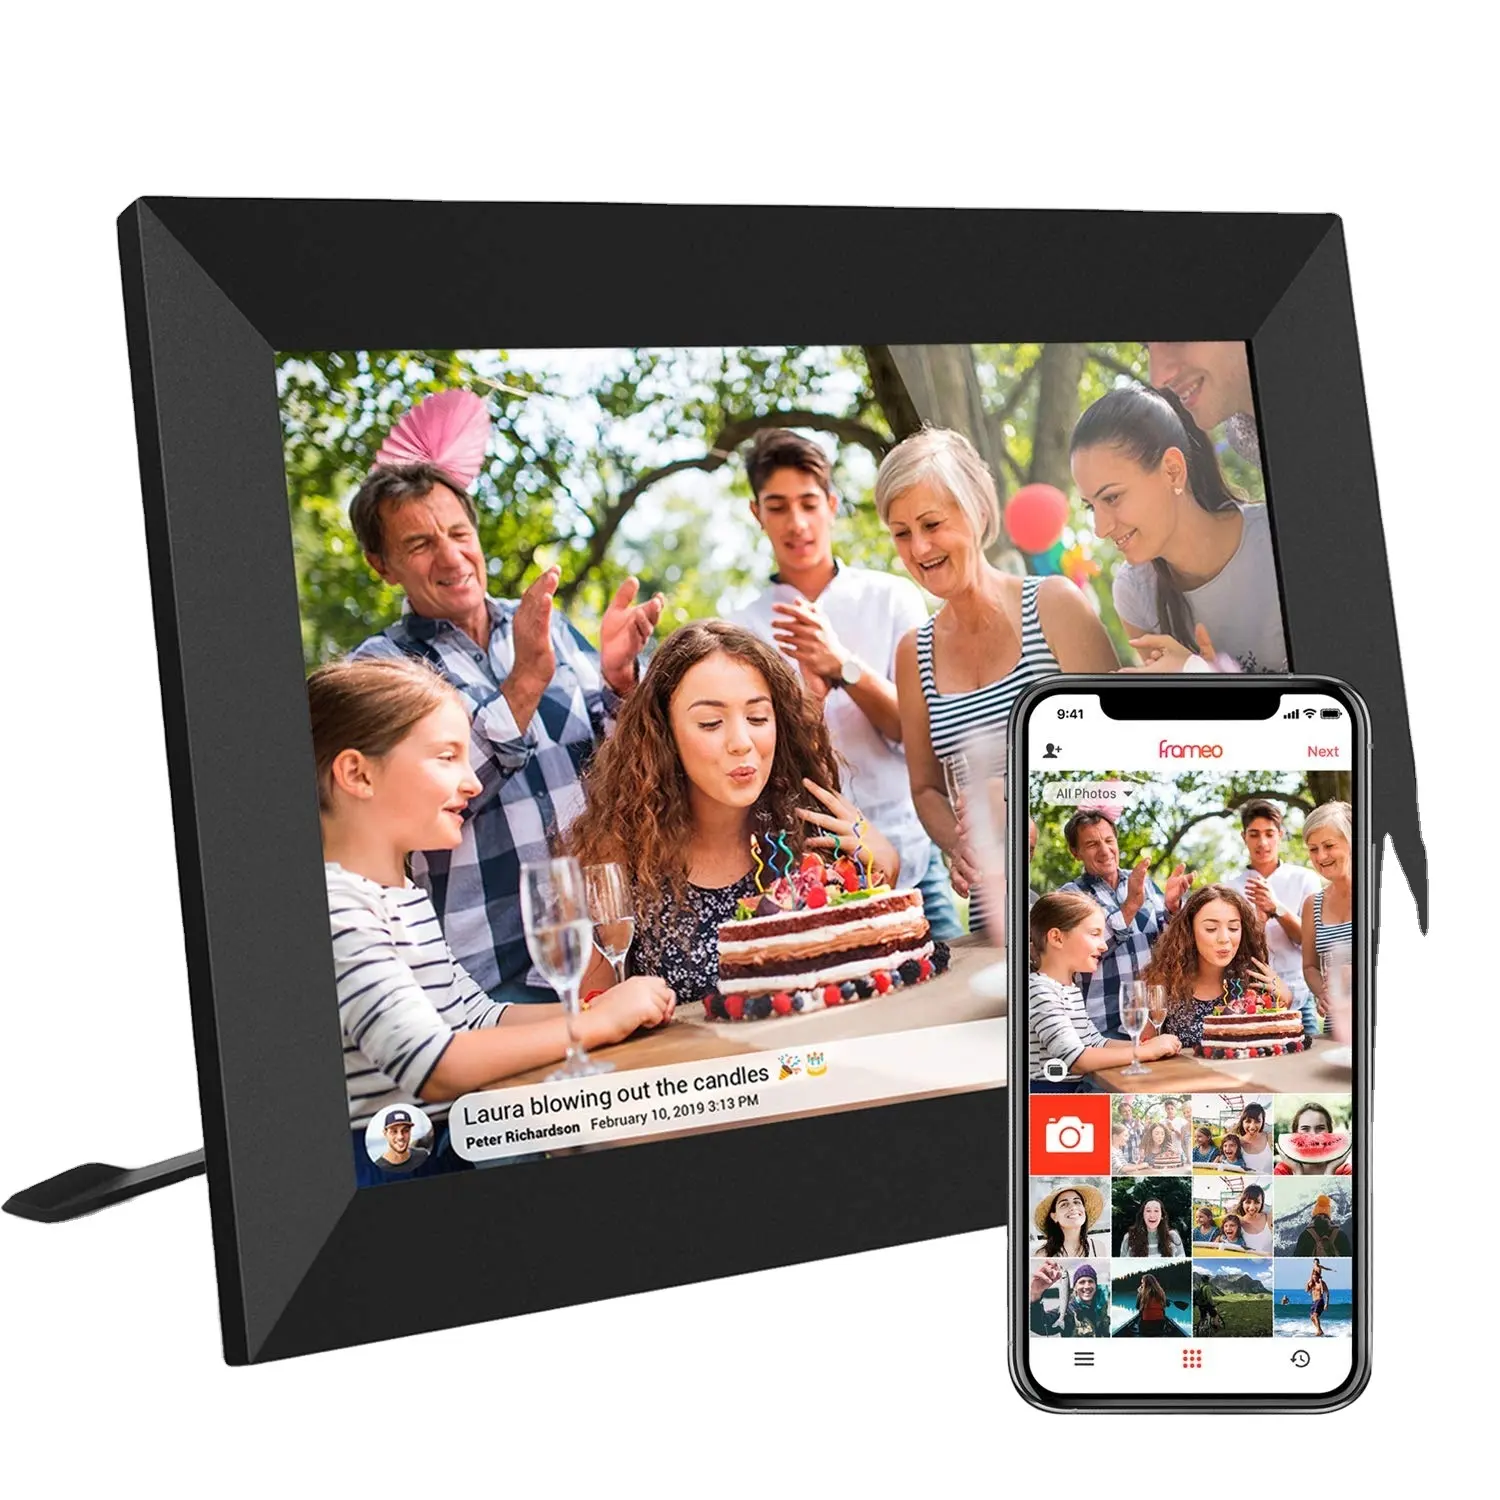 جديد نموذج الذكية WiFi الرقمية إطار صور 10.1 بوصة IPS اللمس شاشة HD عرض ، 16GB التخزين حصة الصور عبر التطبيق ، البريد الإلكتروني ، سحابة